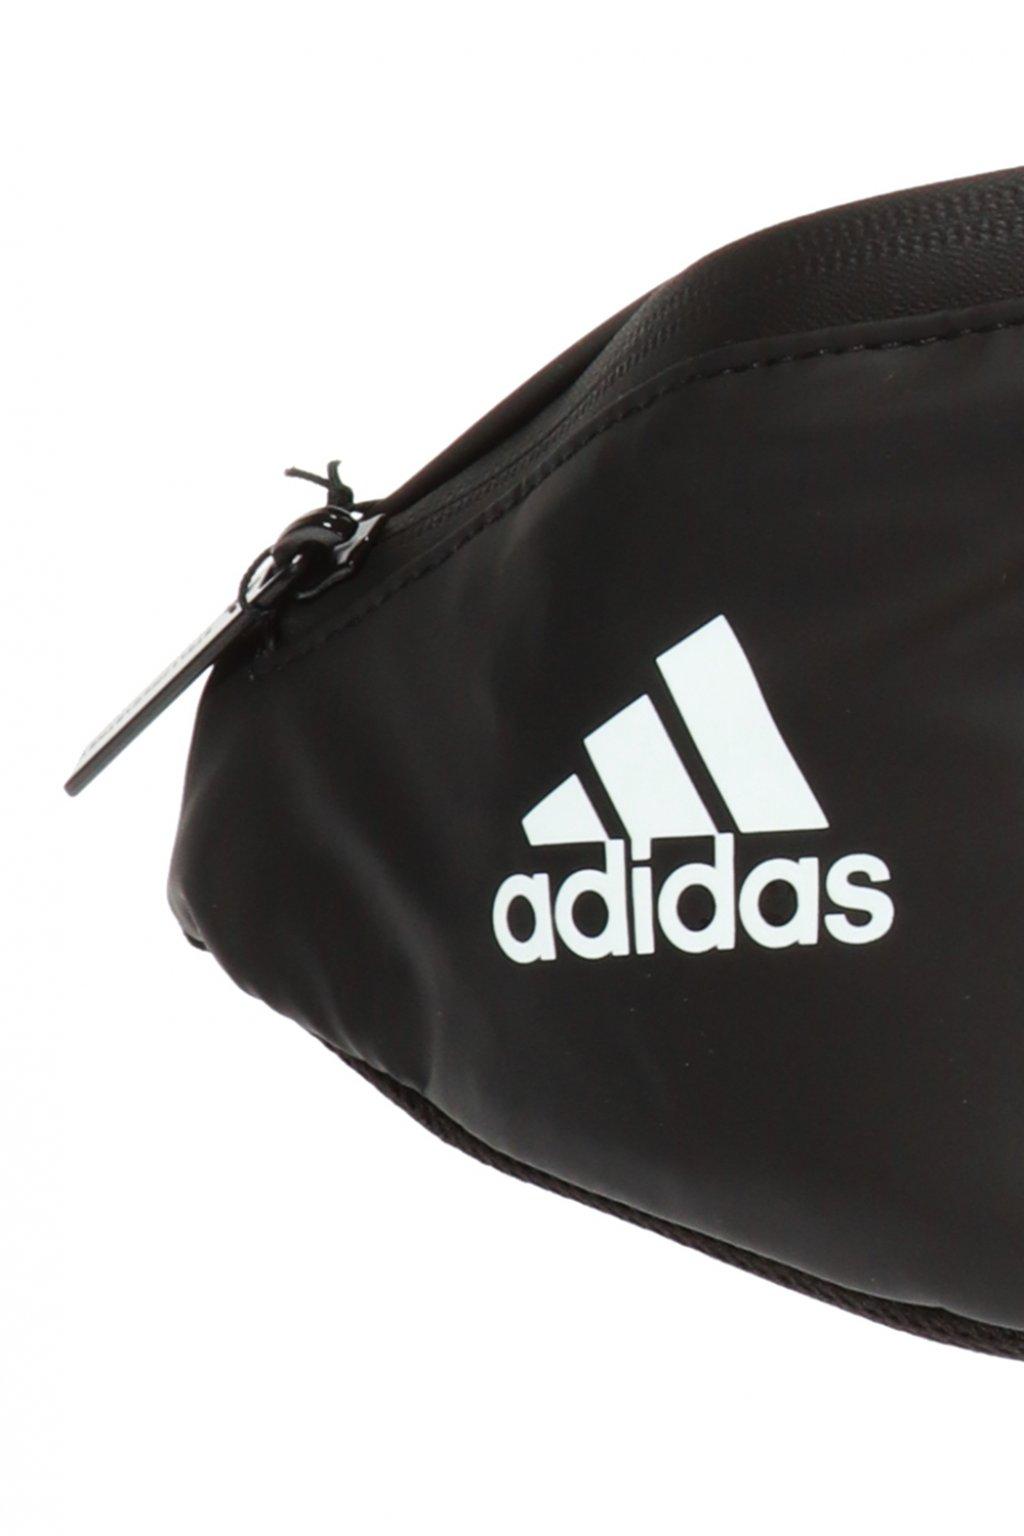 adidas By Stella McCartney Logo-printed Belt Bag in Black - Lyst